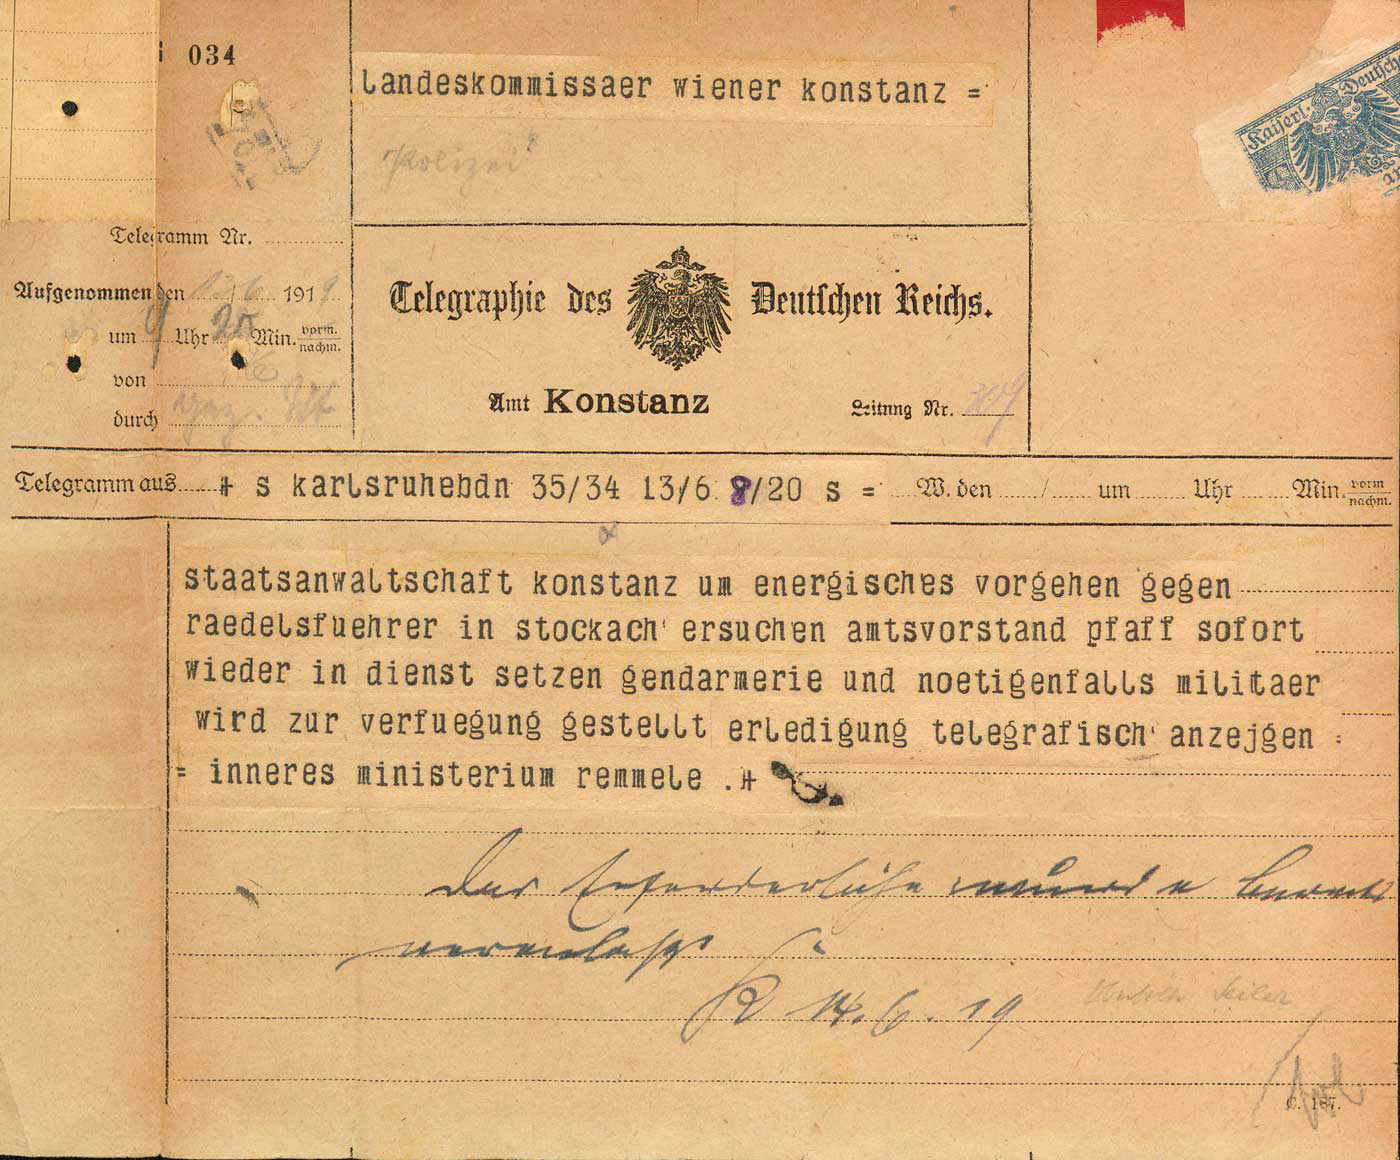  Das Telegramm des badischen Innenministers Remmele an den Konstanzer Landeskommissär Wiener im Juni 1919, Staatsarchiv Freiburg, A 96/1 Nr. 6608 